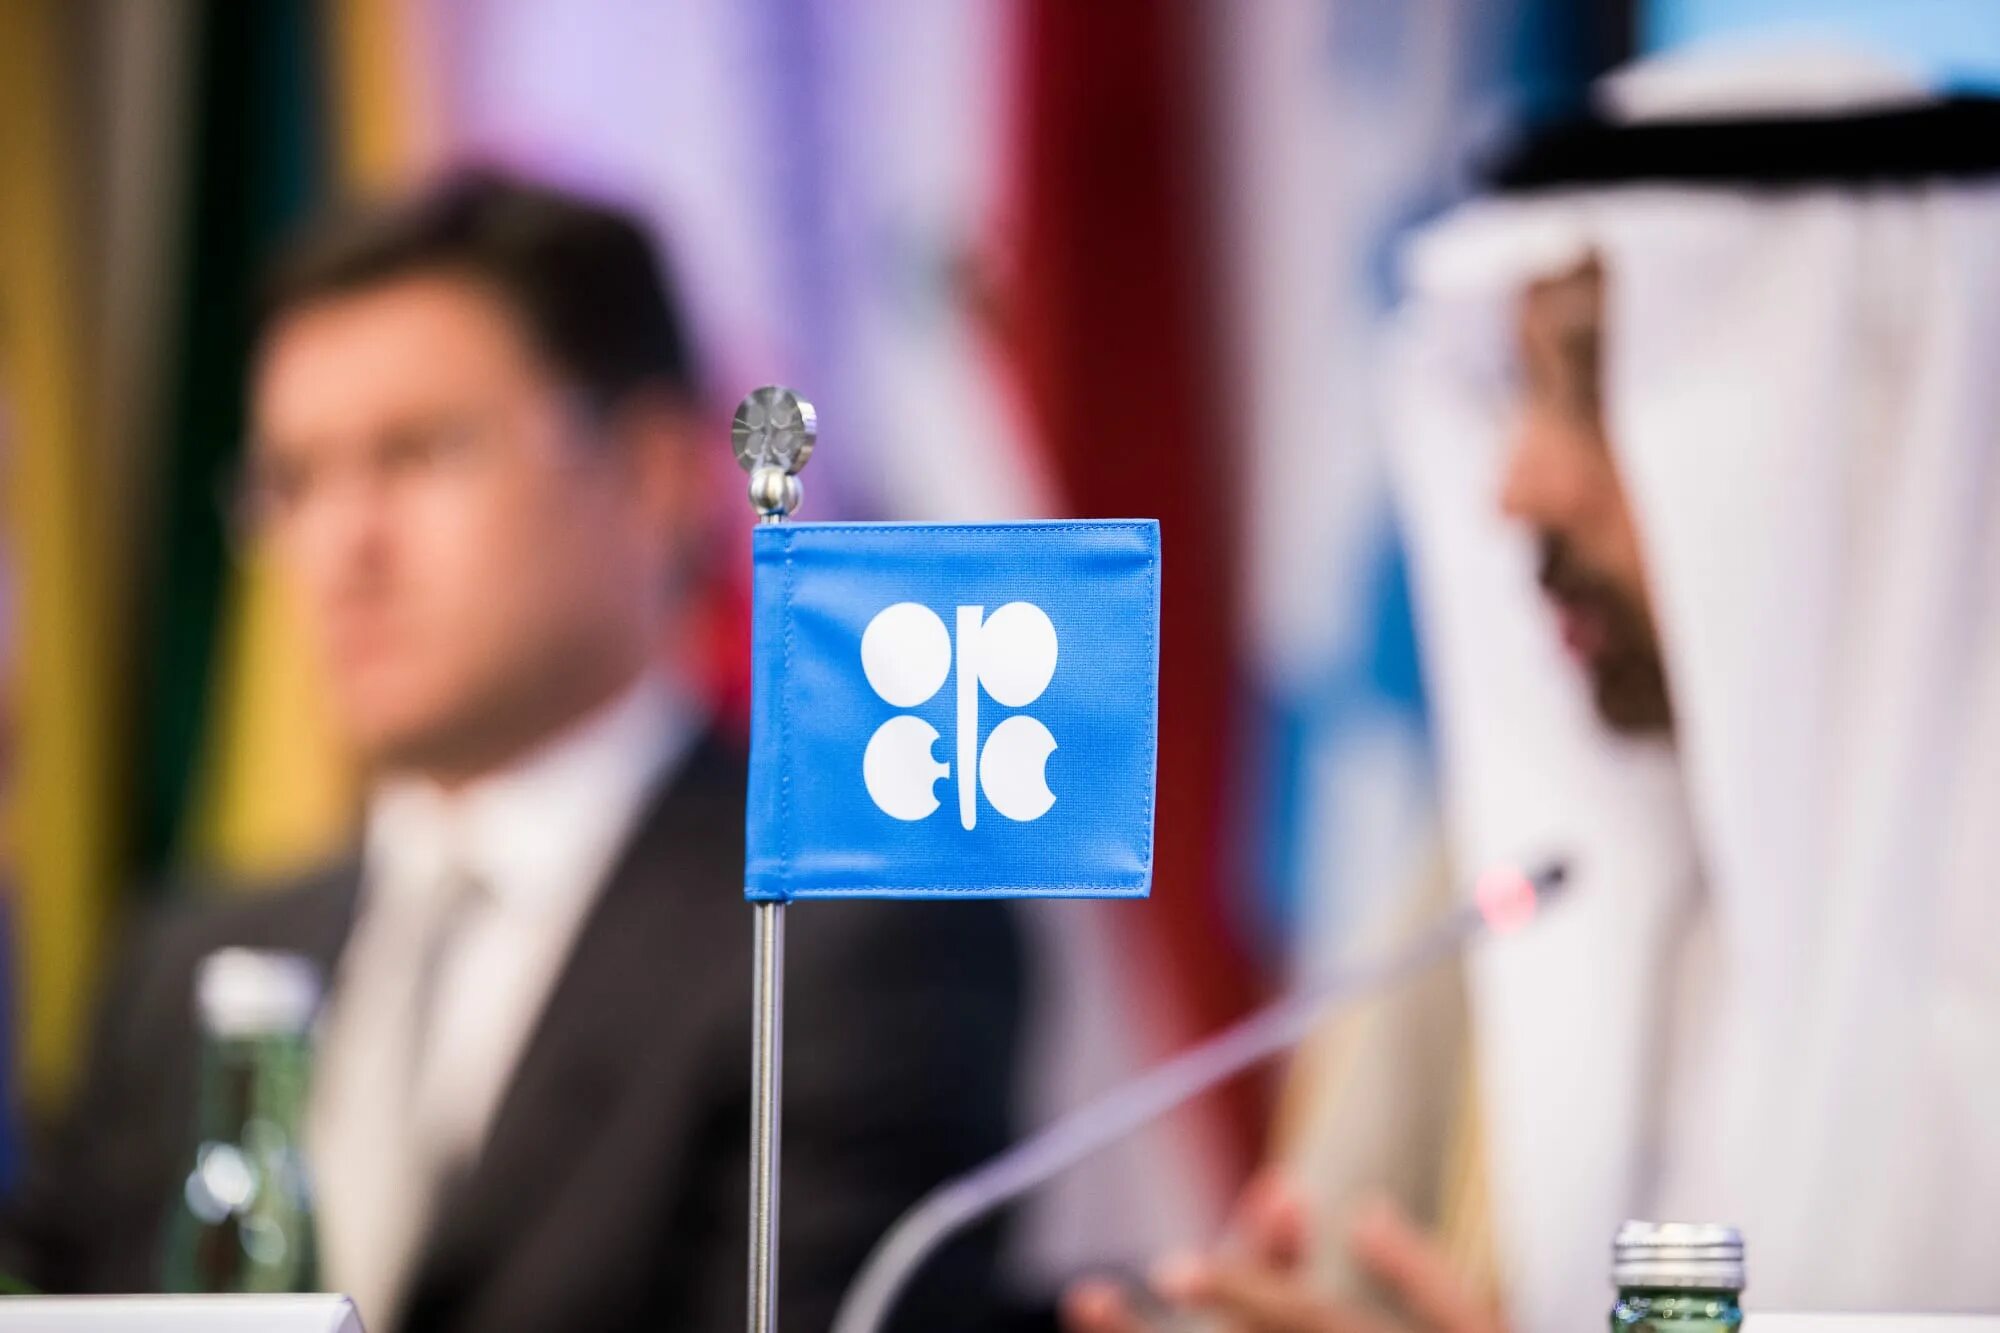 ОПЕК саудиты. ОПЕК+ Россия. ОПЕК нефть. Саудовская аравия опек